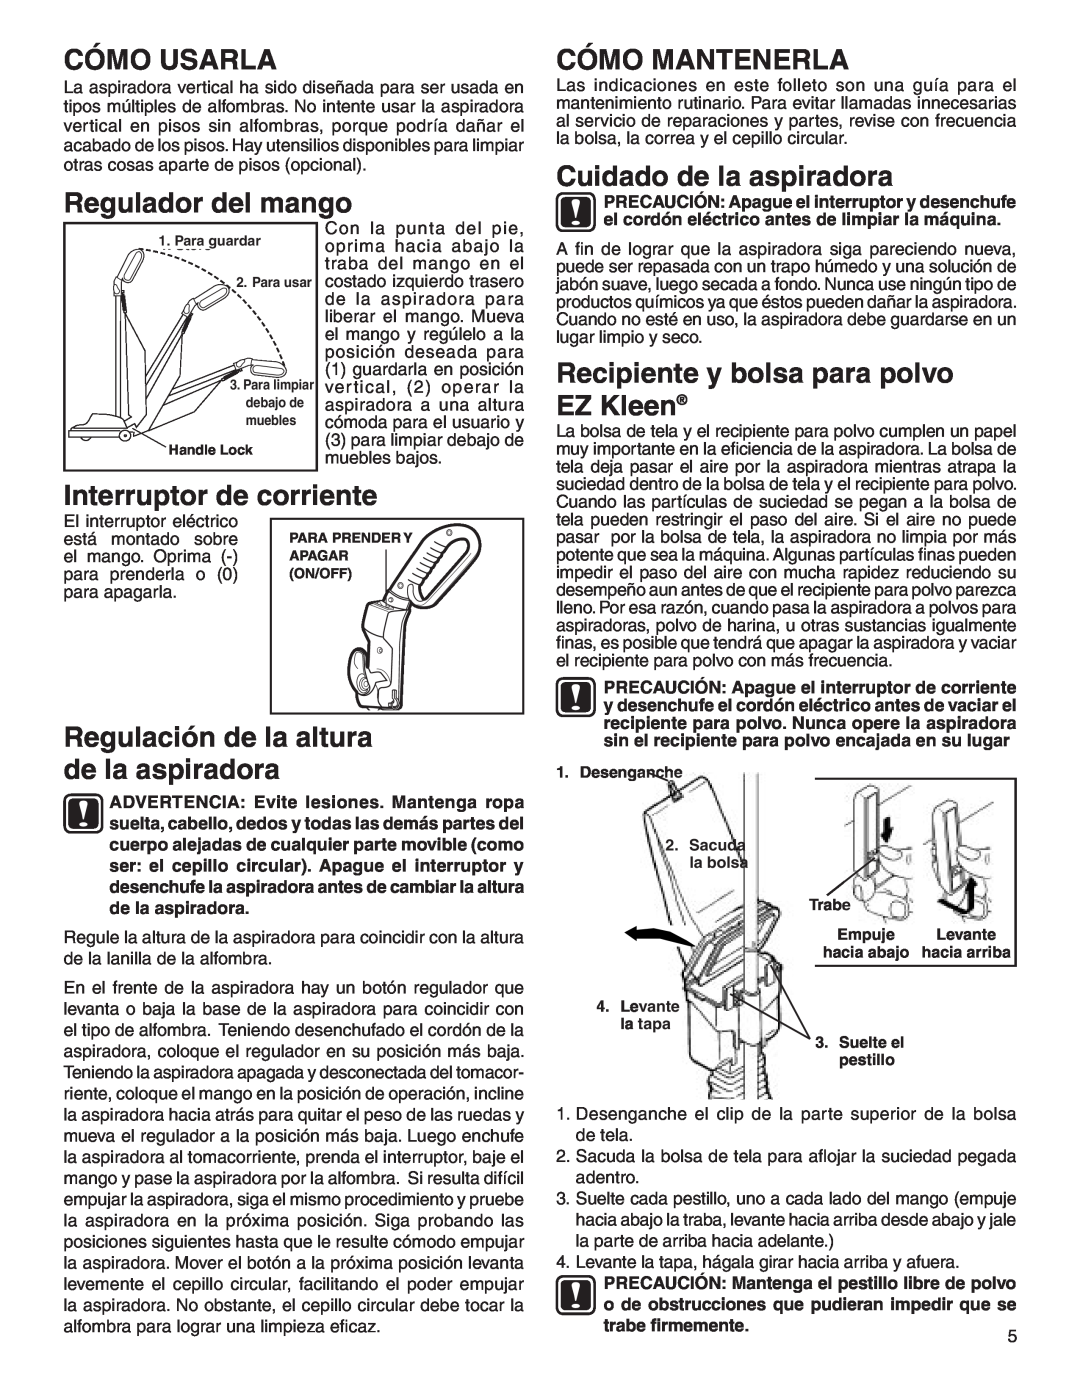 Sanitaire 880 Cómo Usarla, Regulador del mango, Cómo Mantenerla, Cuidado de la aspiradora, Interruptor de corriente 